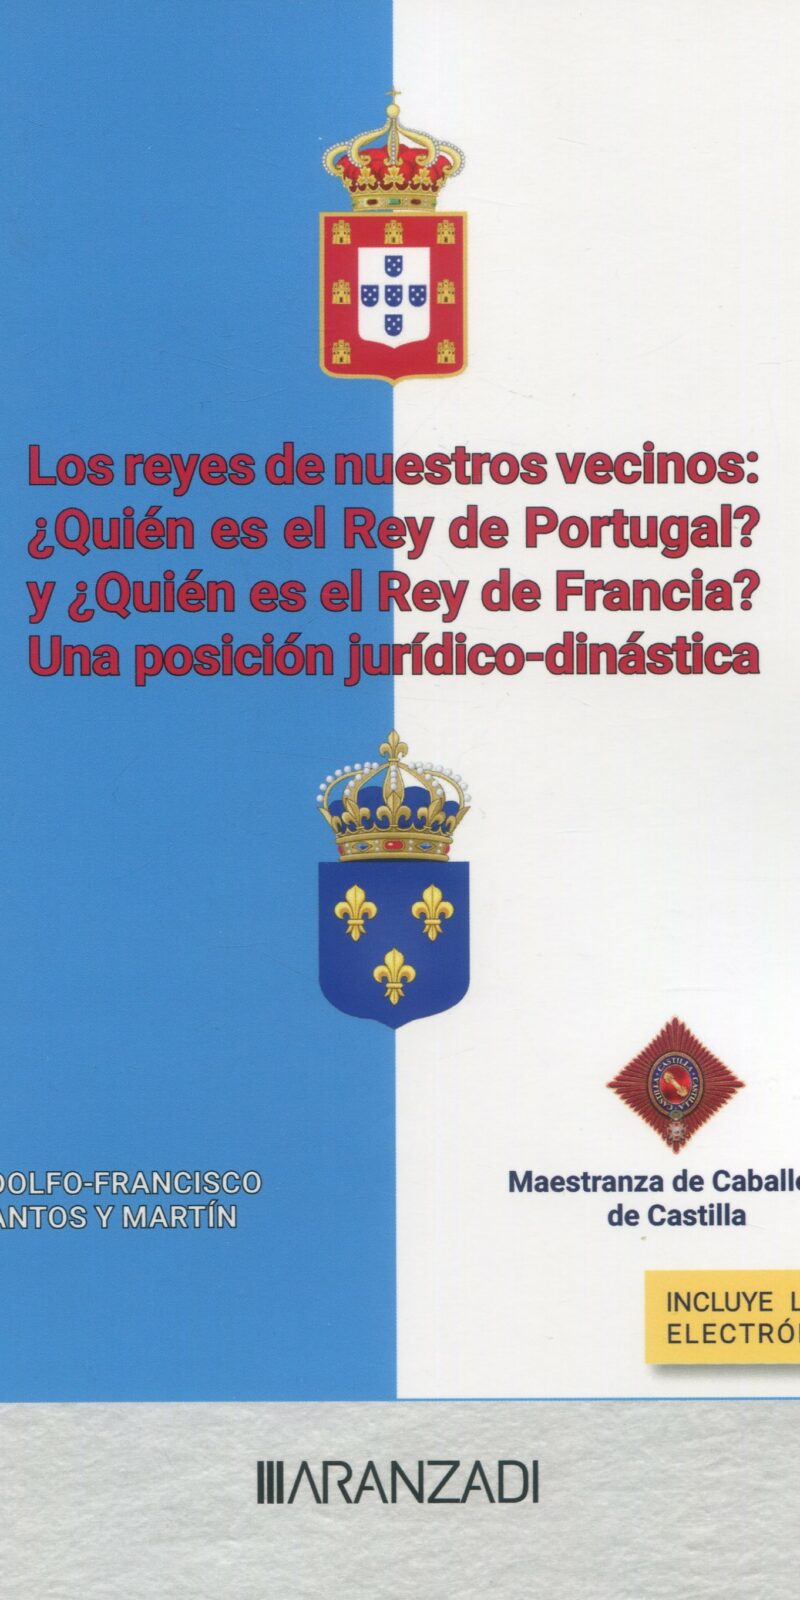 Reyes de nuestros vecinos ¿quién es el rey de Portugal?